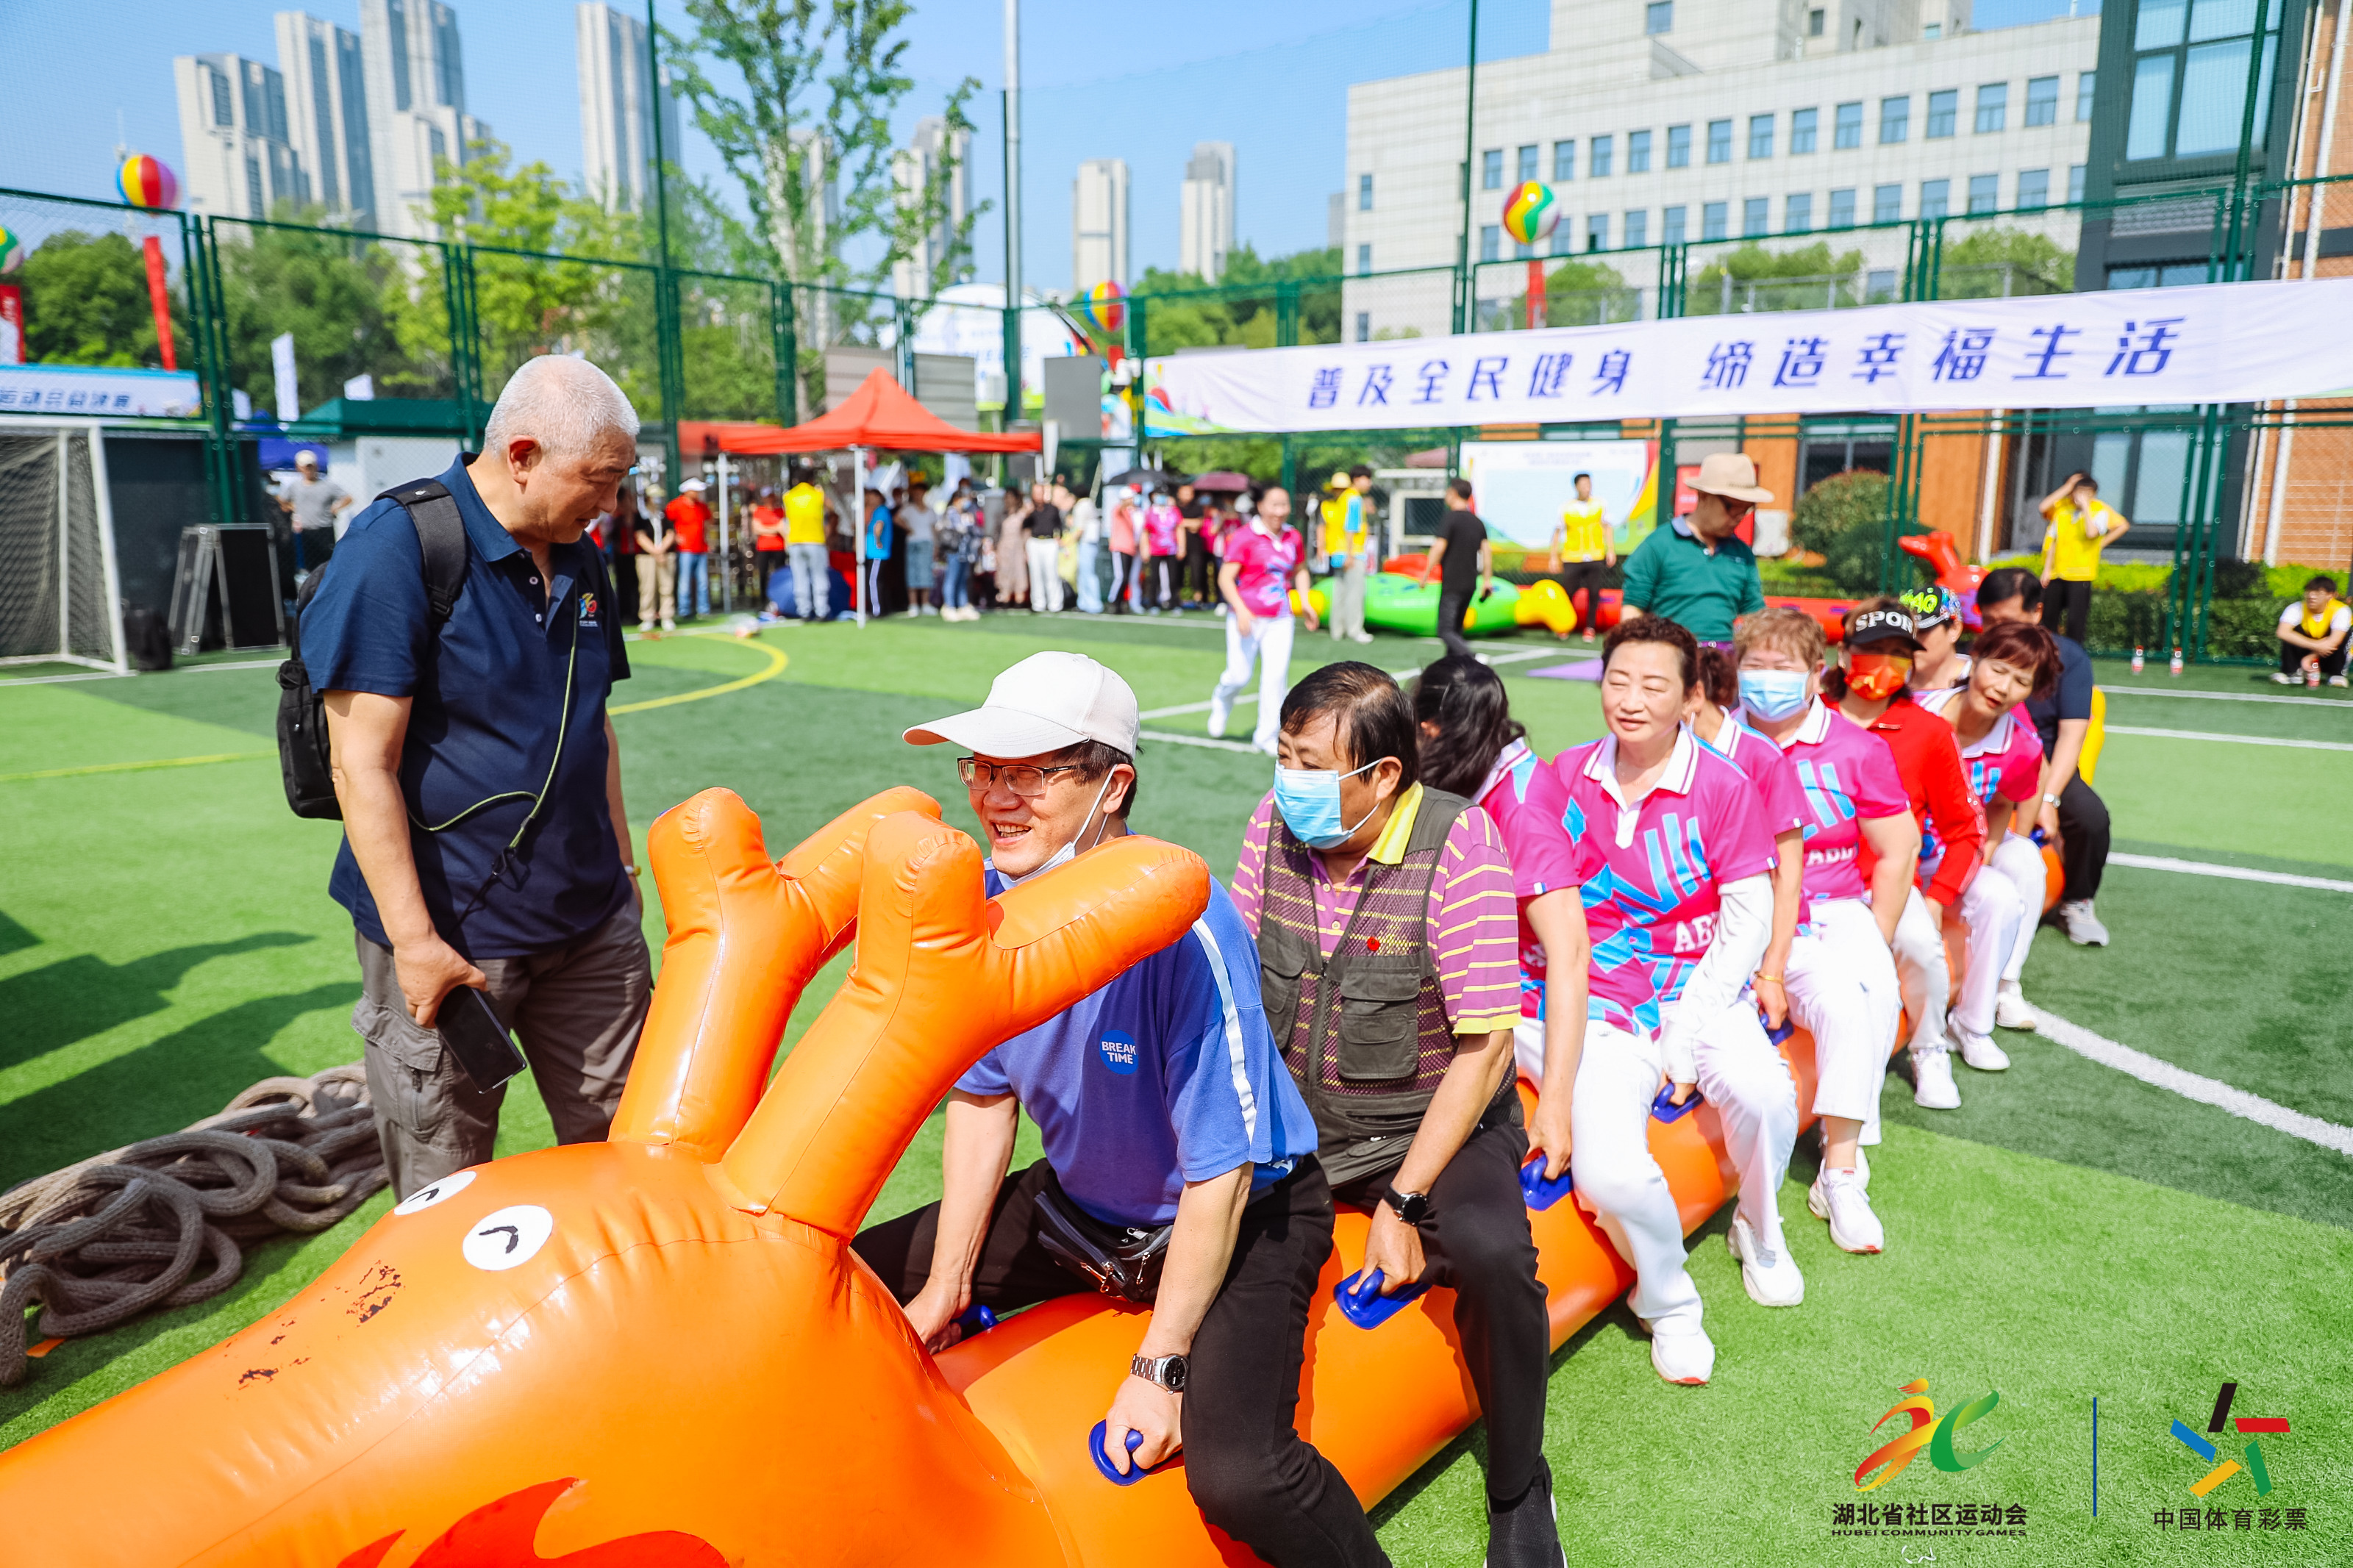 爱社区 爱运动 爱健康 湖北省第二届社区运动会总决赛在武汉举行 